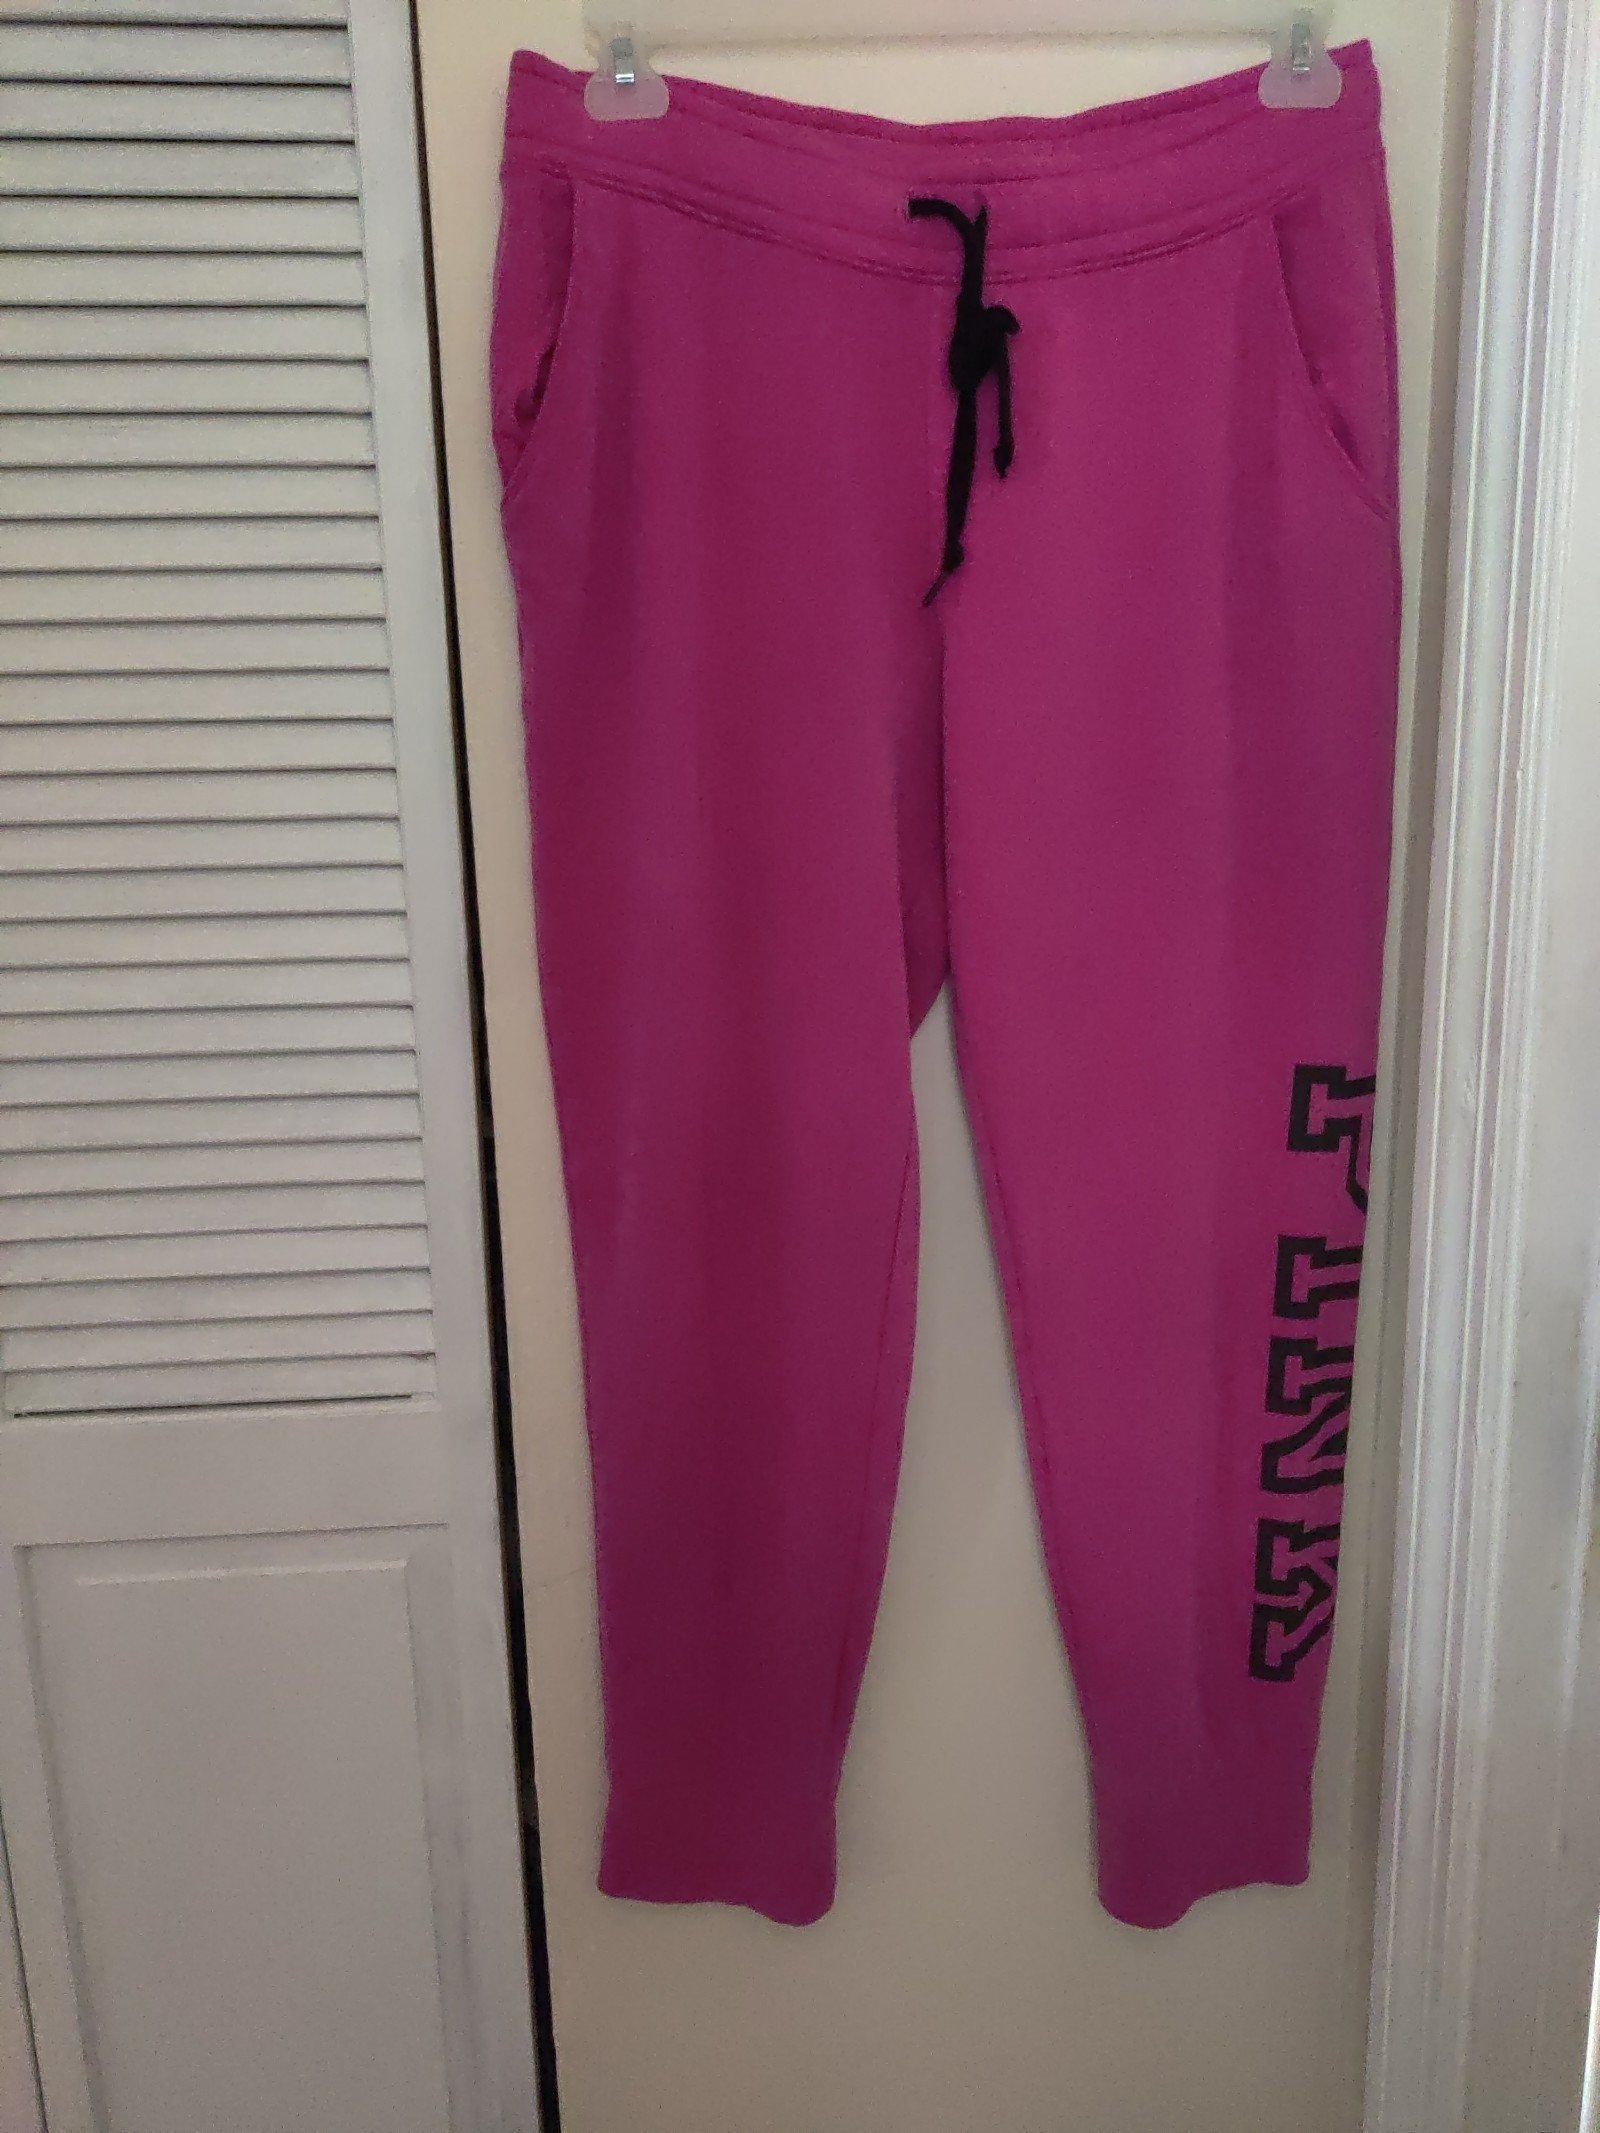 Buy PINK Victoria secret cropped sweatpants size L Ju6L0T8gH Store Online